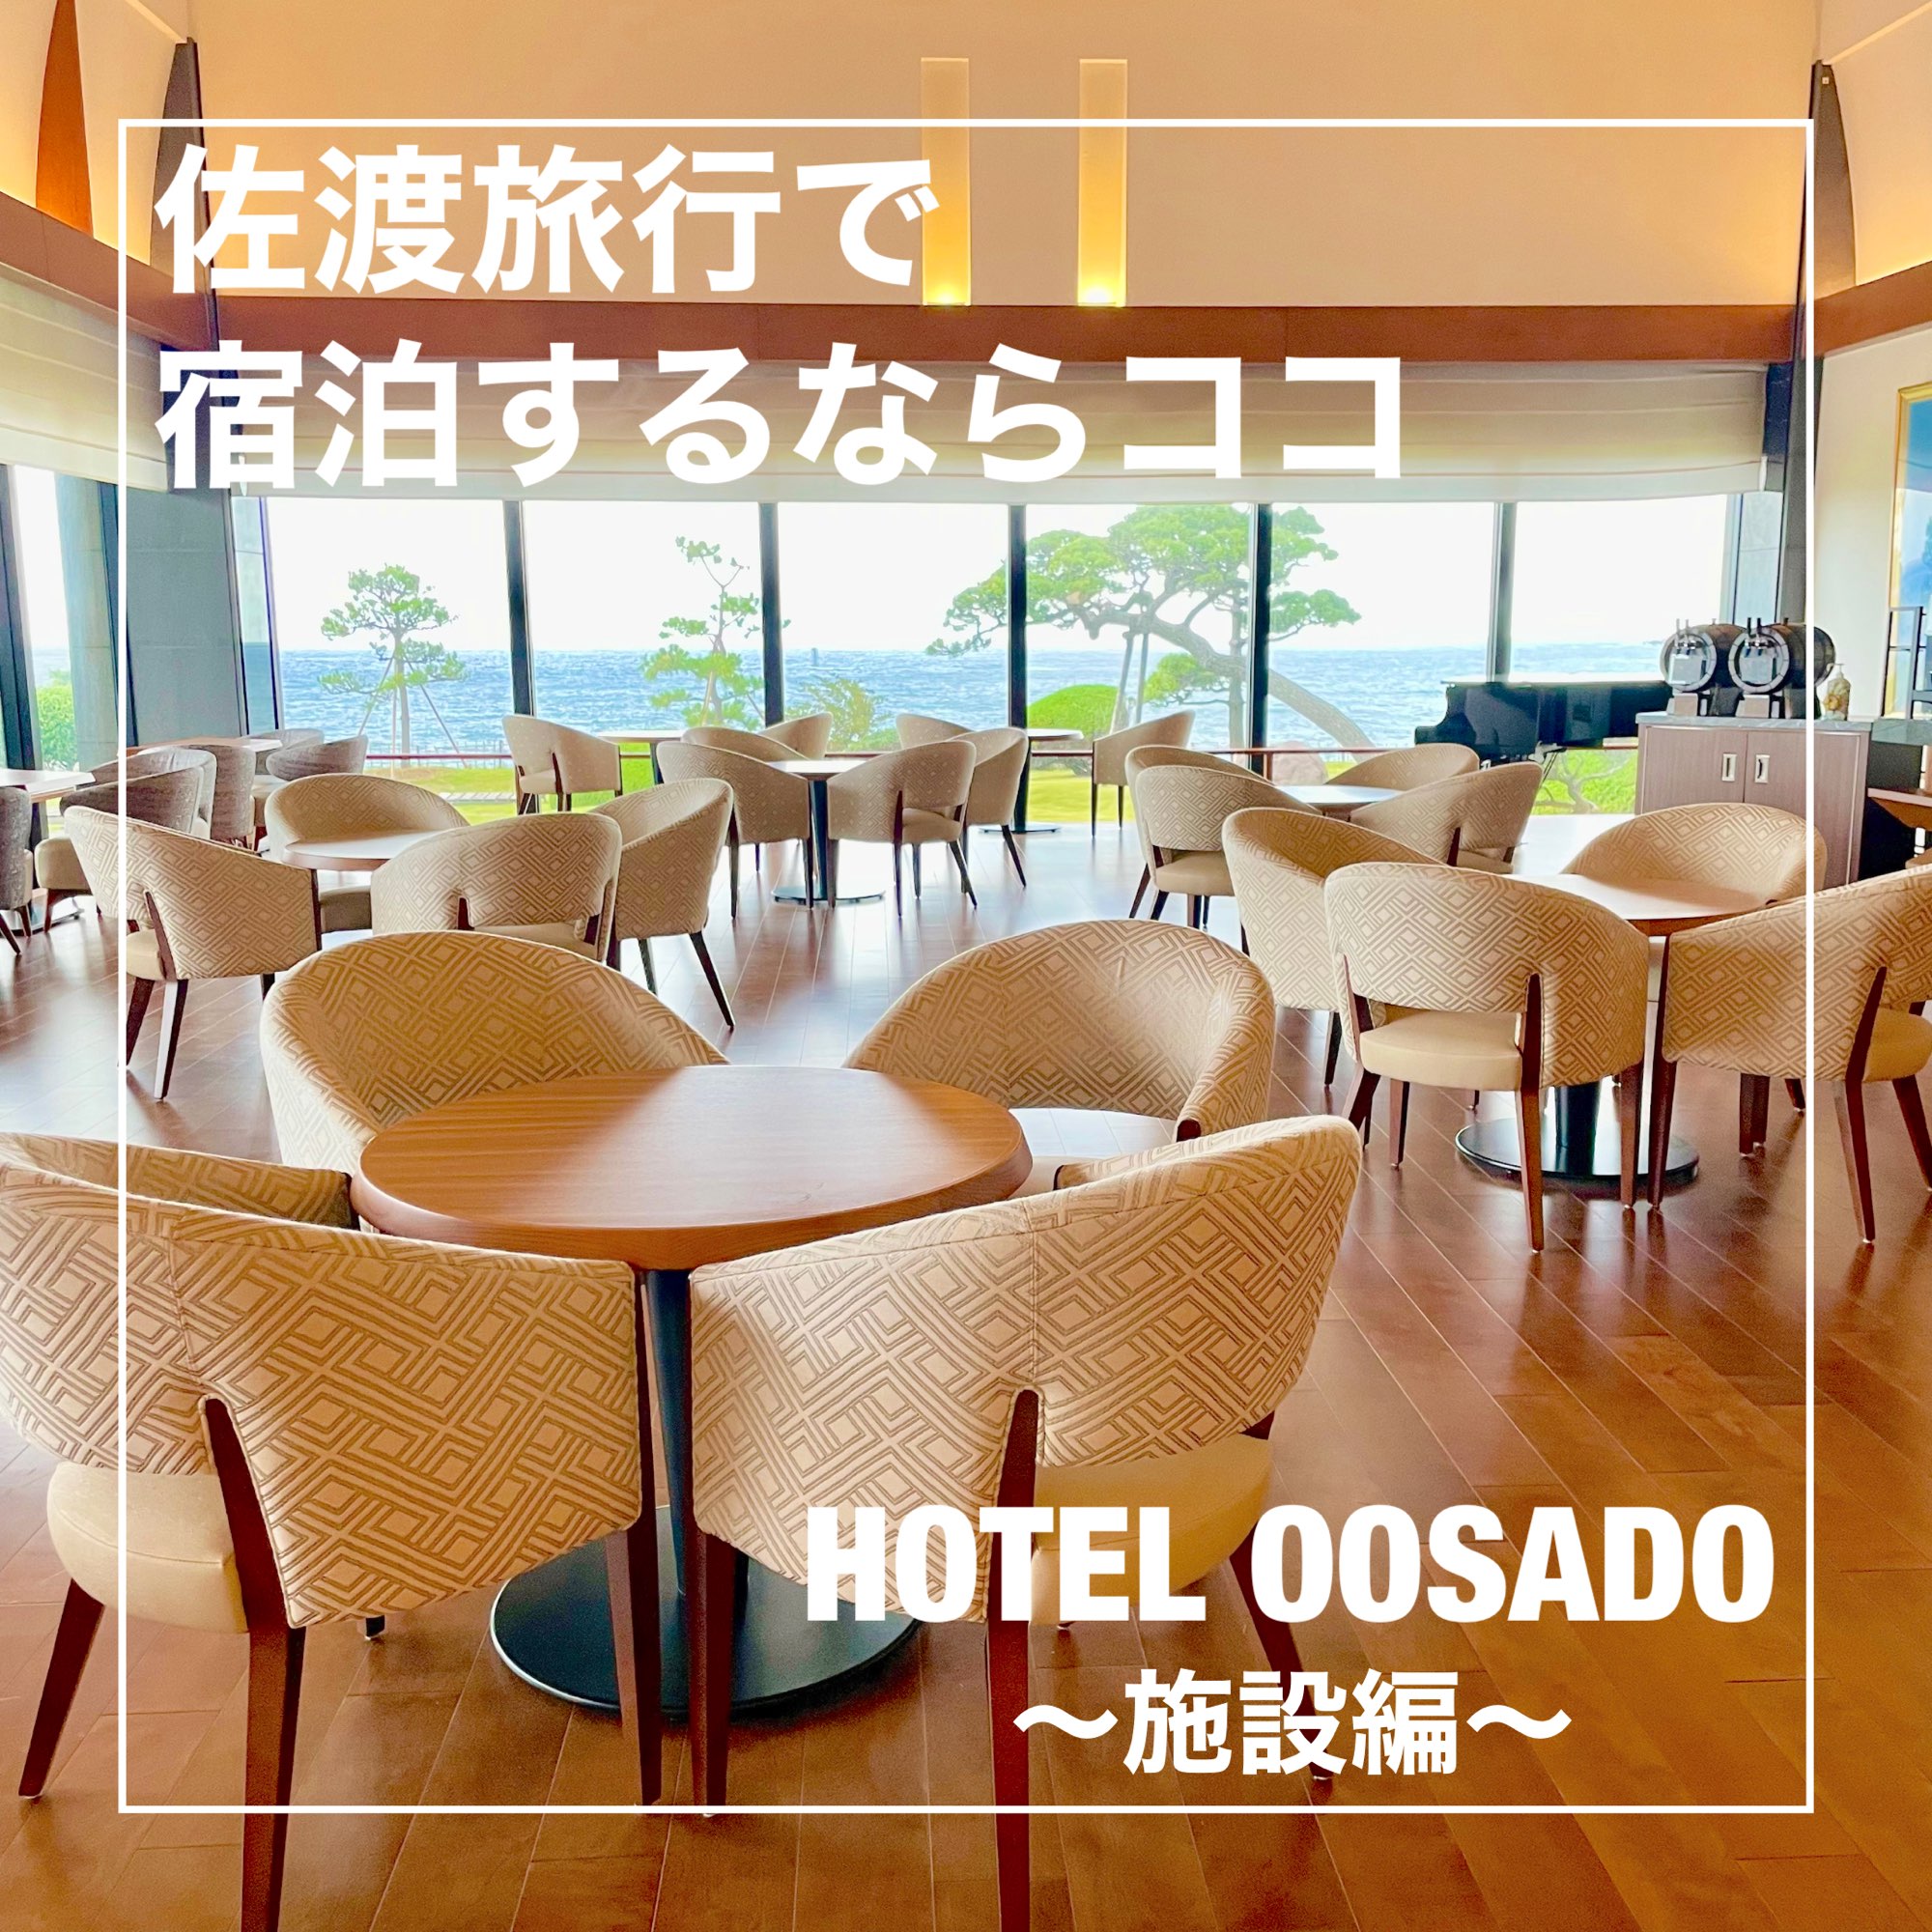 [新泻县]如果您想留在佐渡,请在这里! HOTEL OOSADO〜设施〜